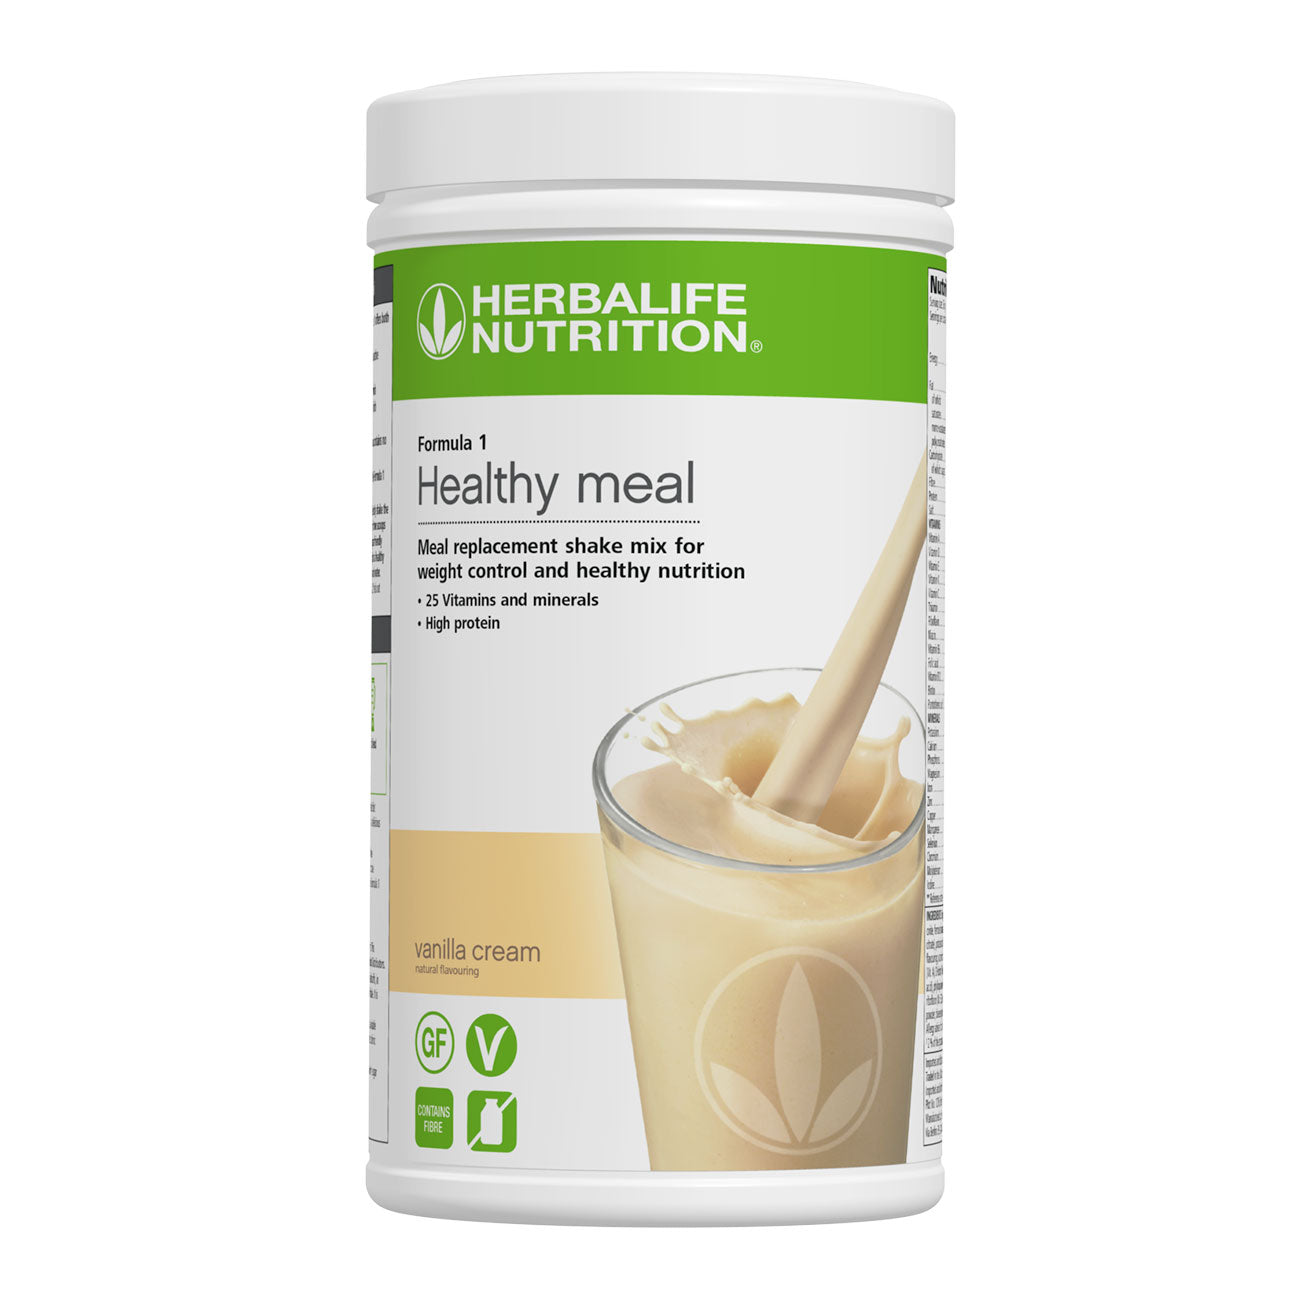 Herbalife 24 Super Shaker Each – Herba-Nutrition